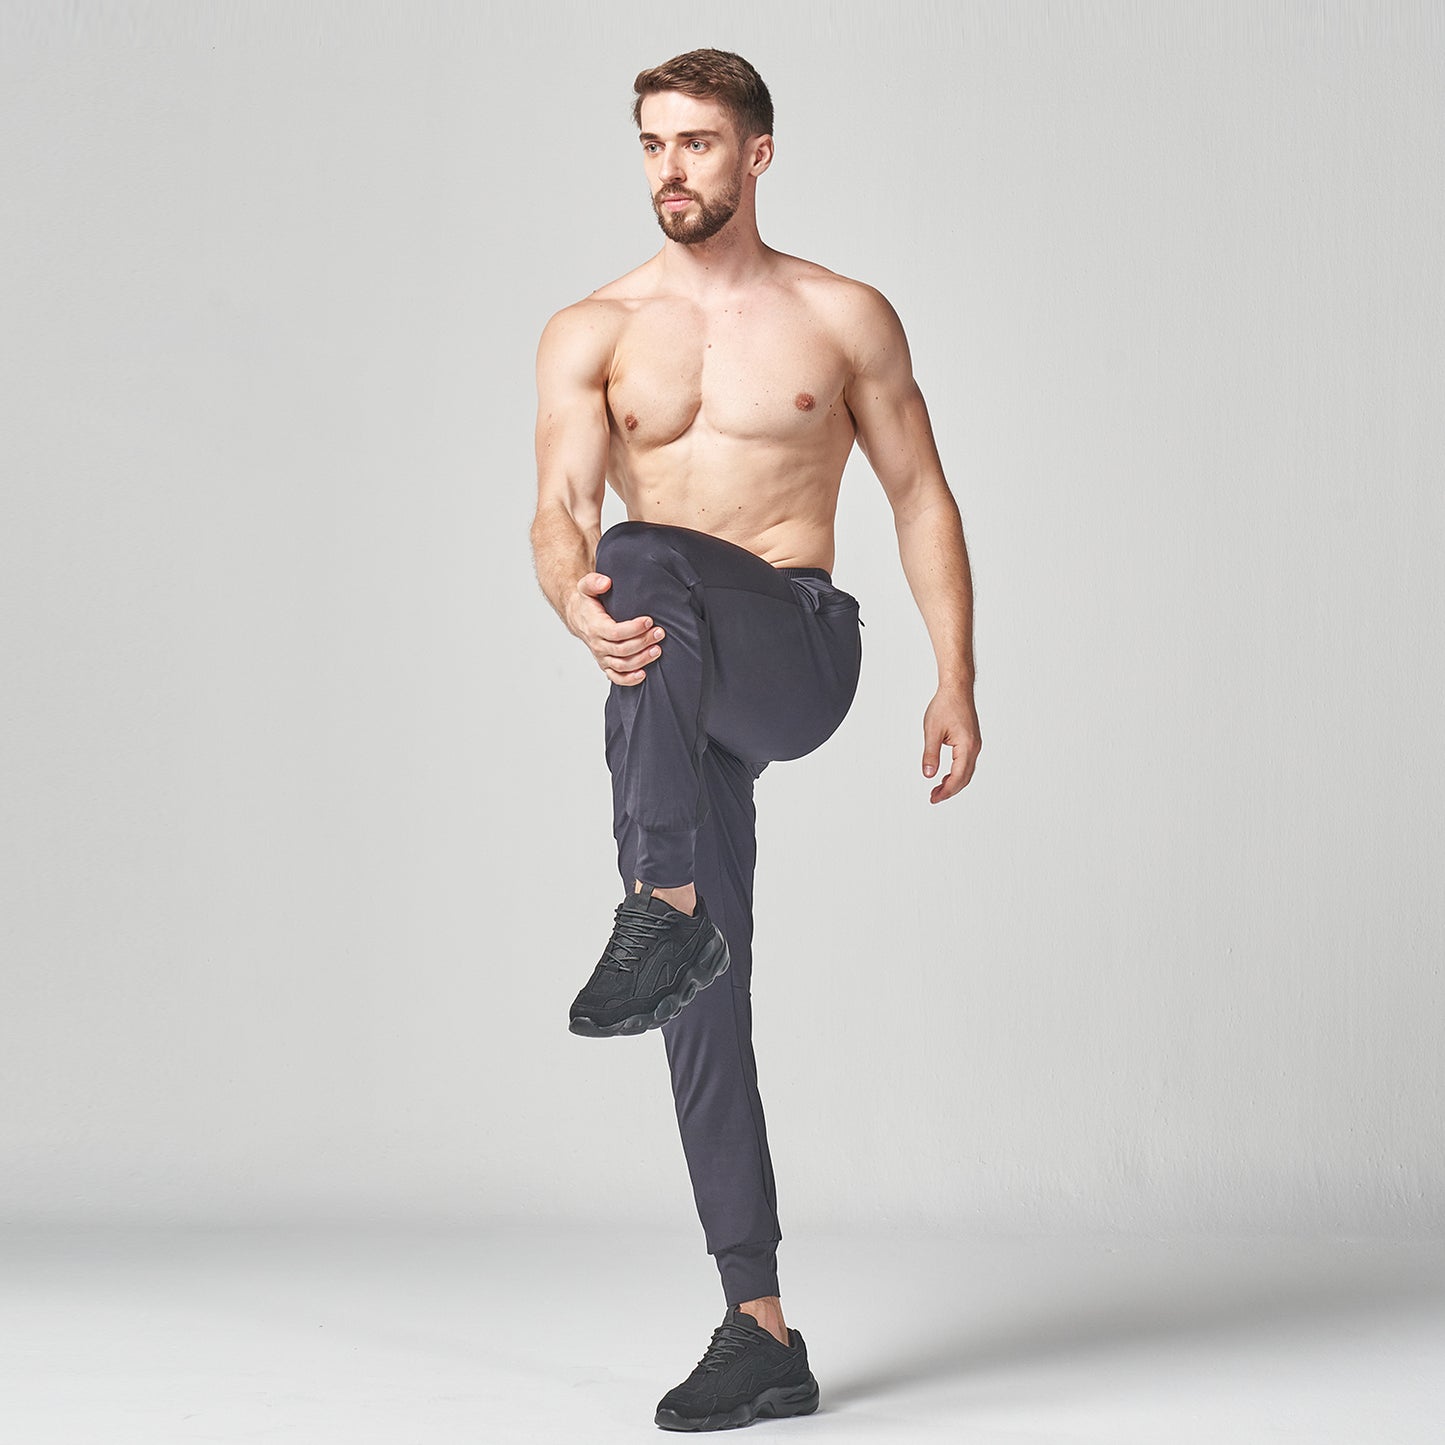 squatwolf-gym-wear-lab360-active-joggers-black-workout-pants-for-men